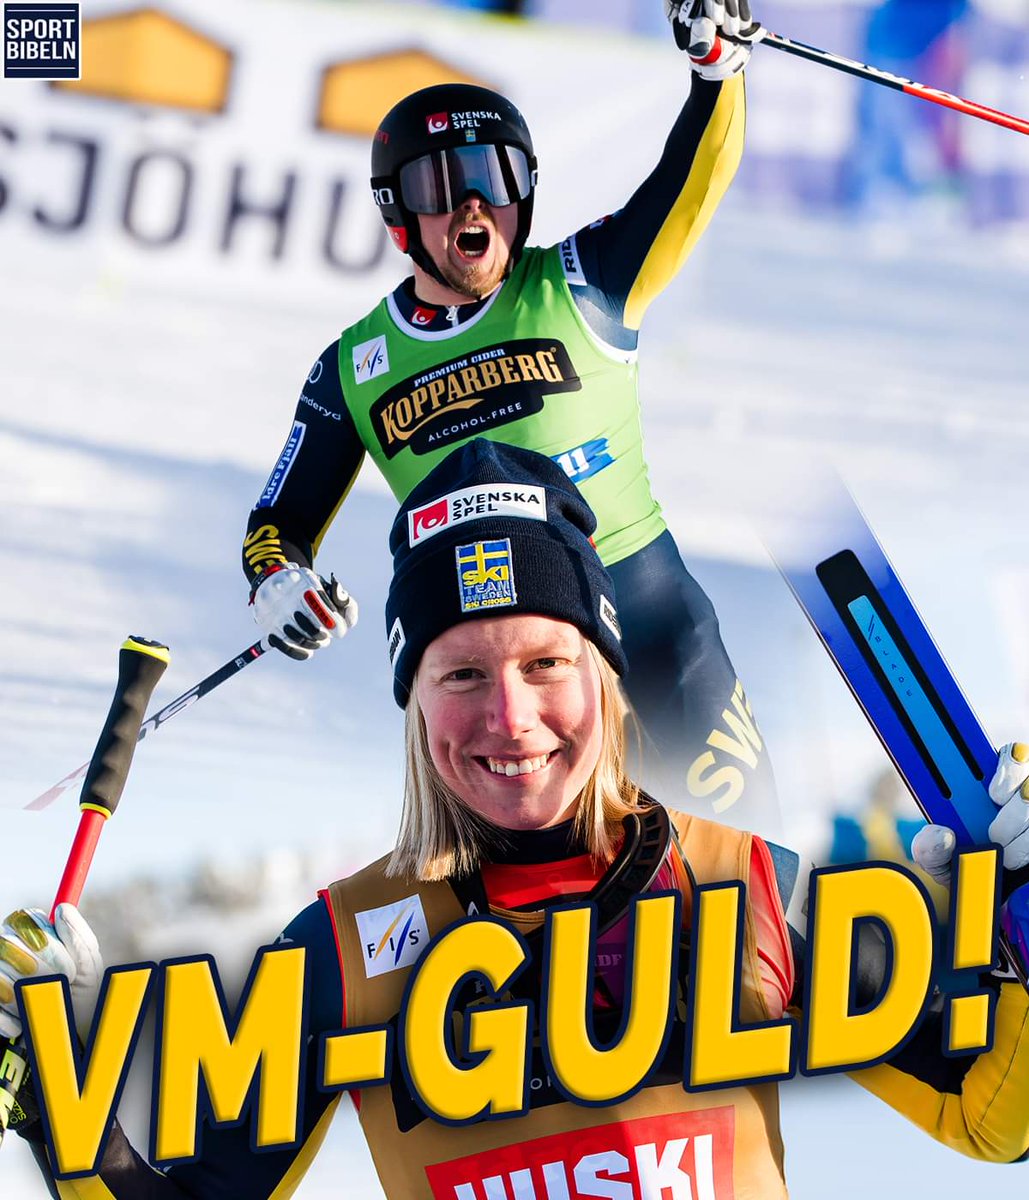 JAAAA!! Sverige vinner nytt VM-GULD i skicross när Sandra Näslund och David Mobärg kör hem historiens allra första guld i en lagtävling. Stort GRATTIS! 👏💙💛